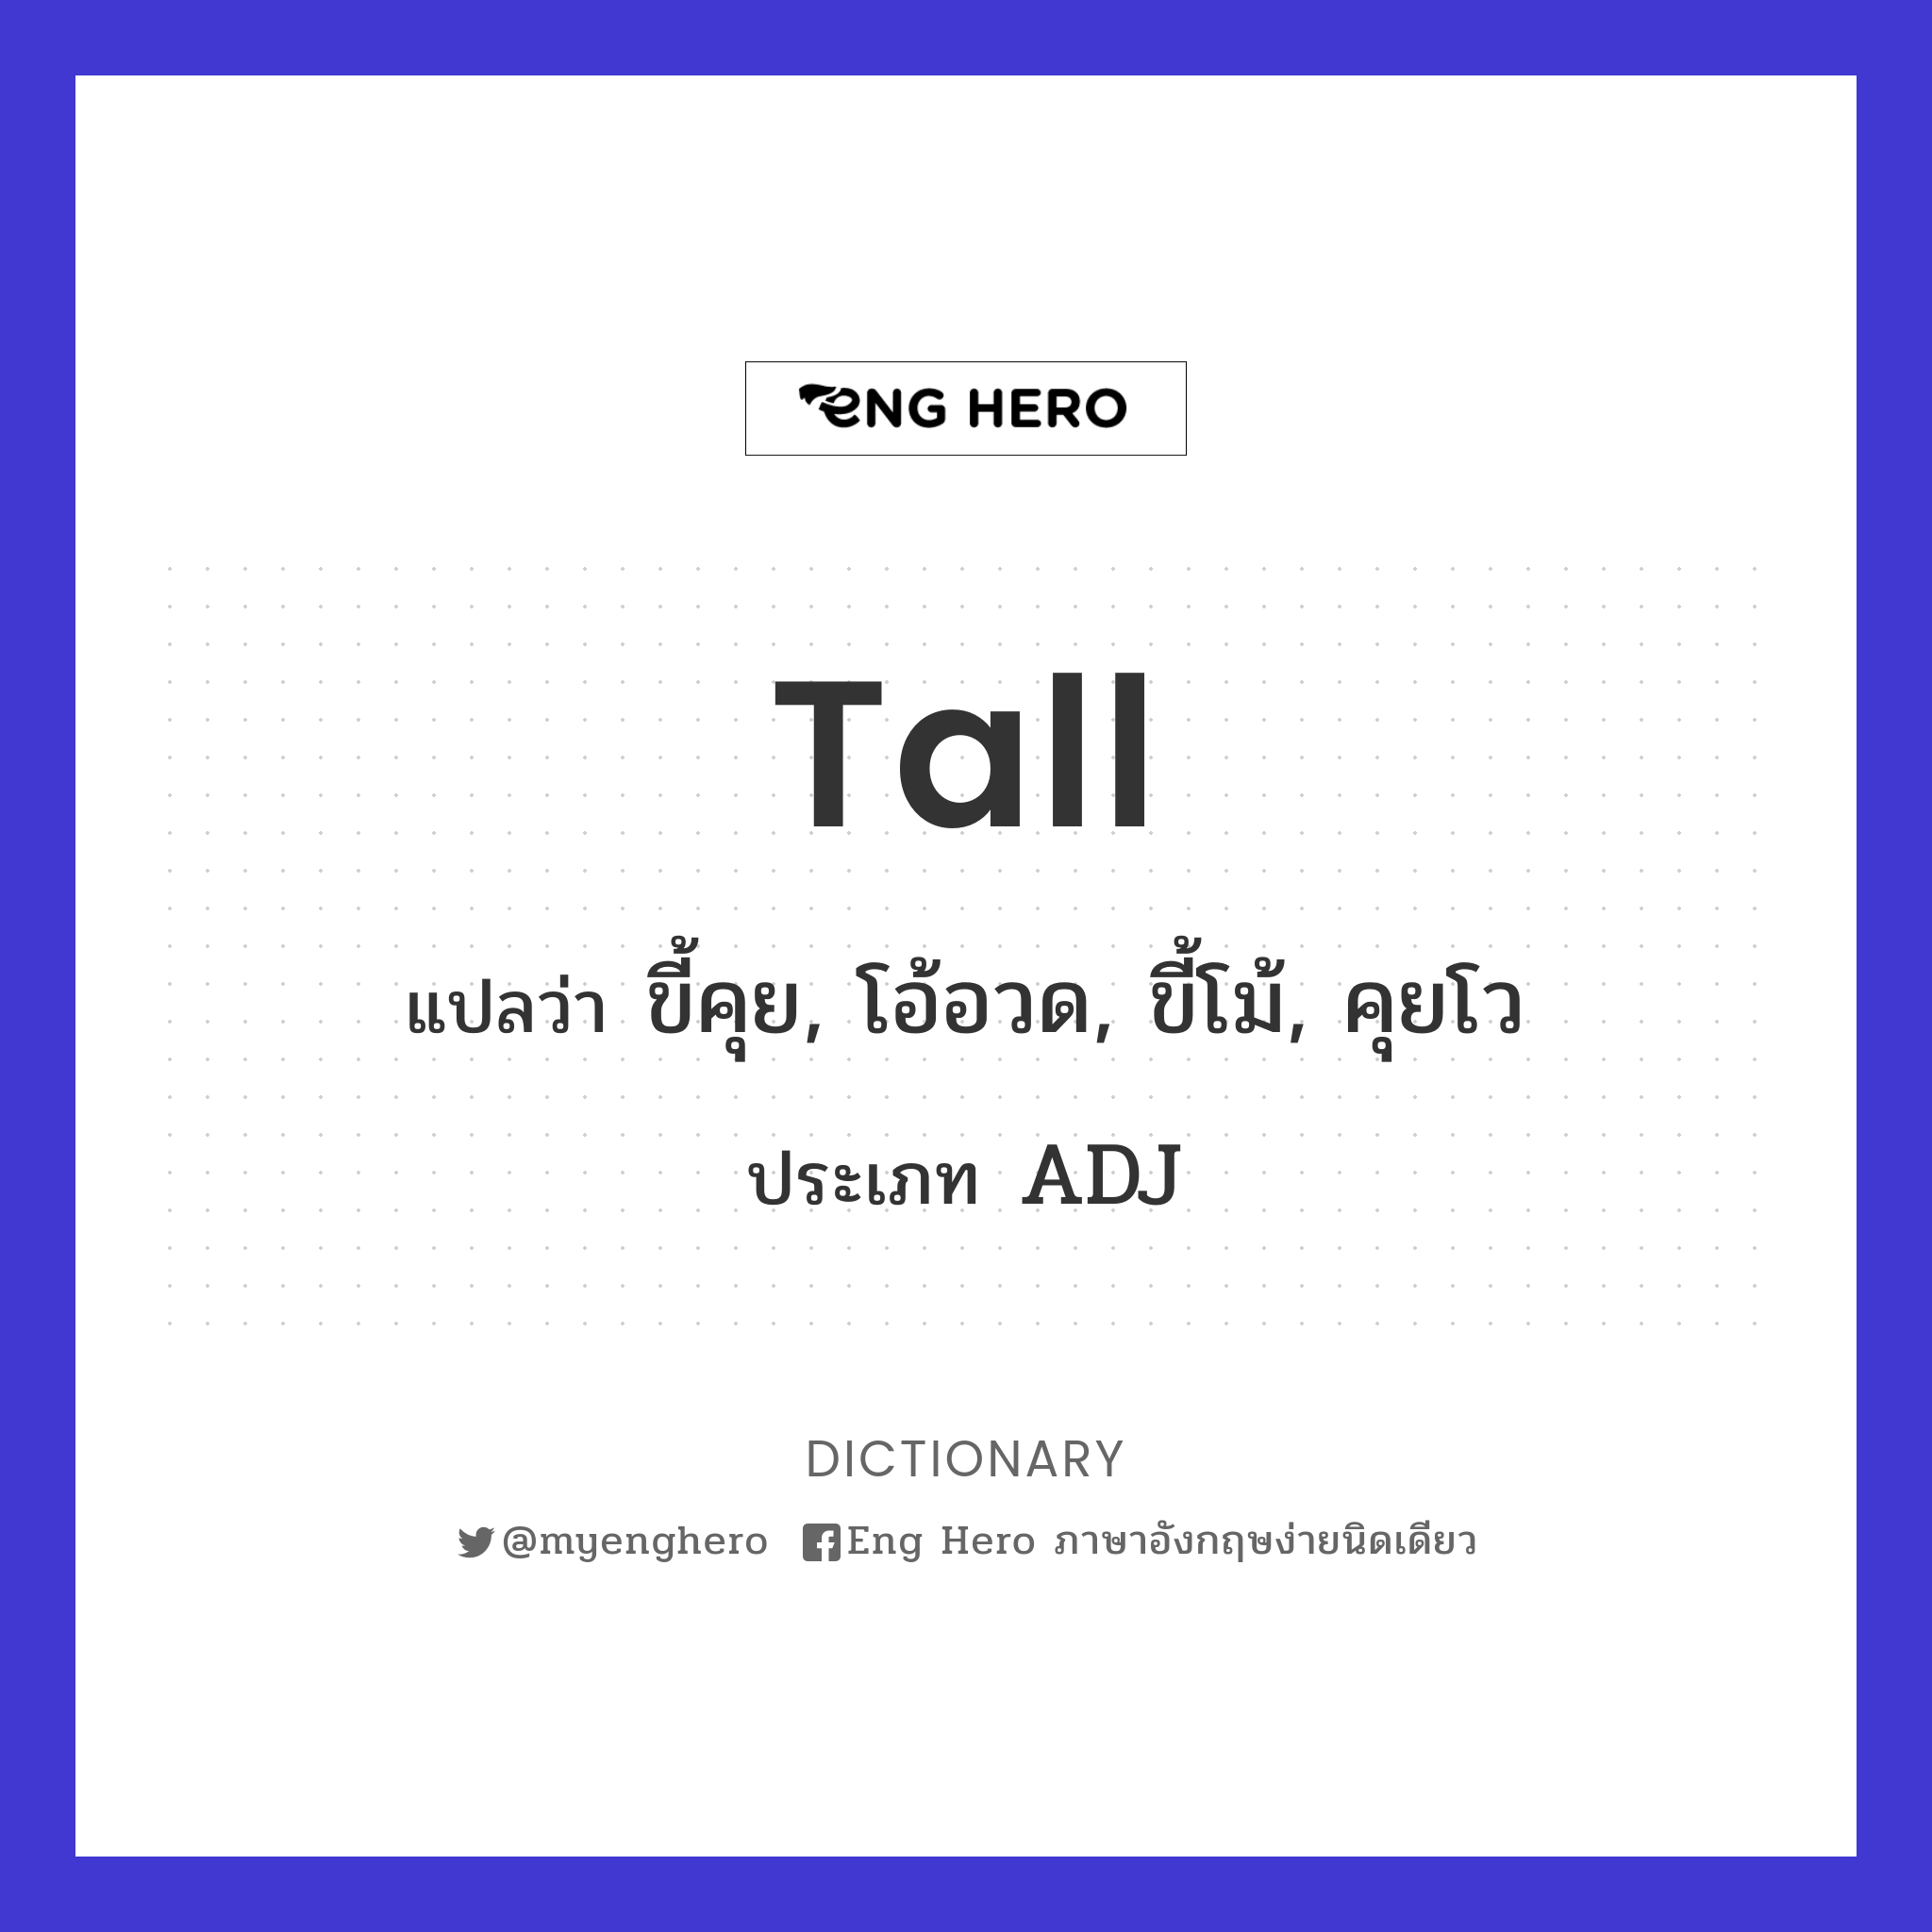 tall